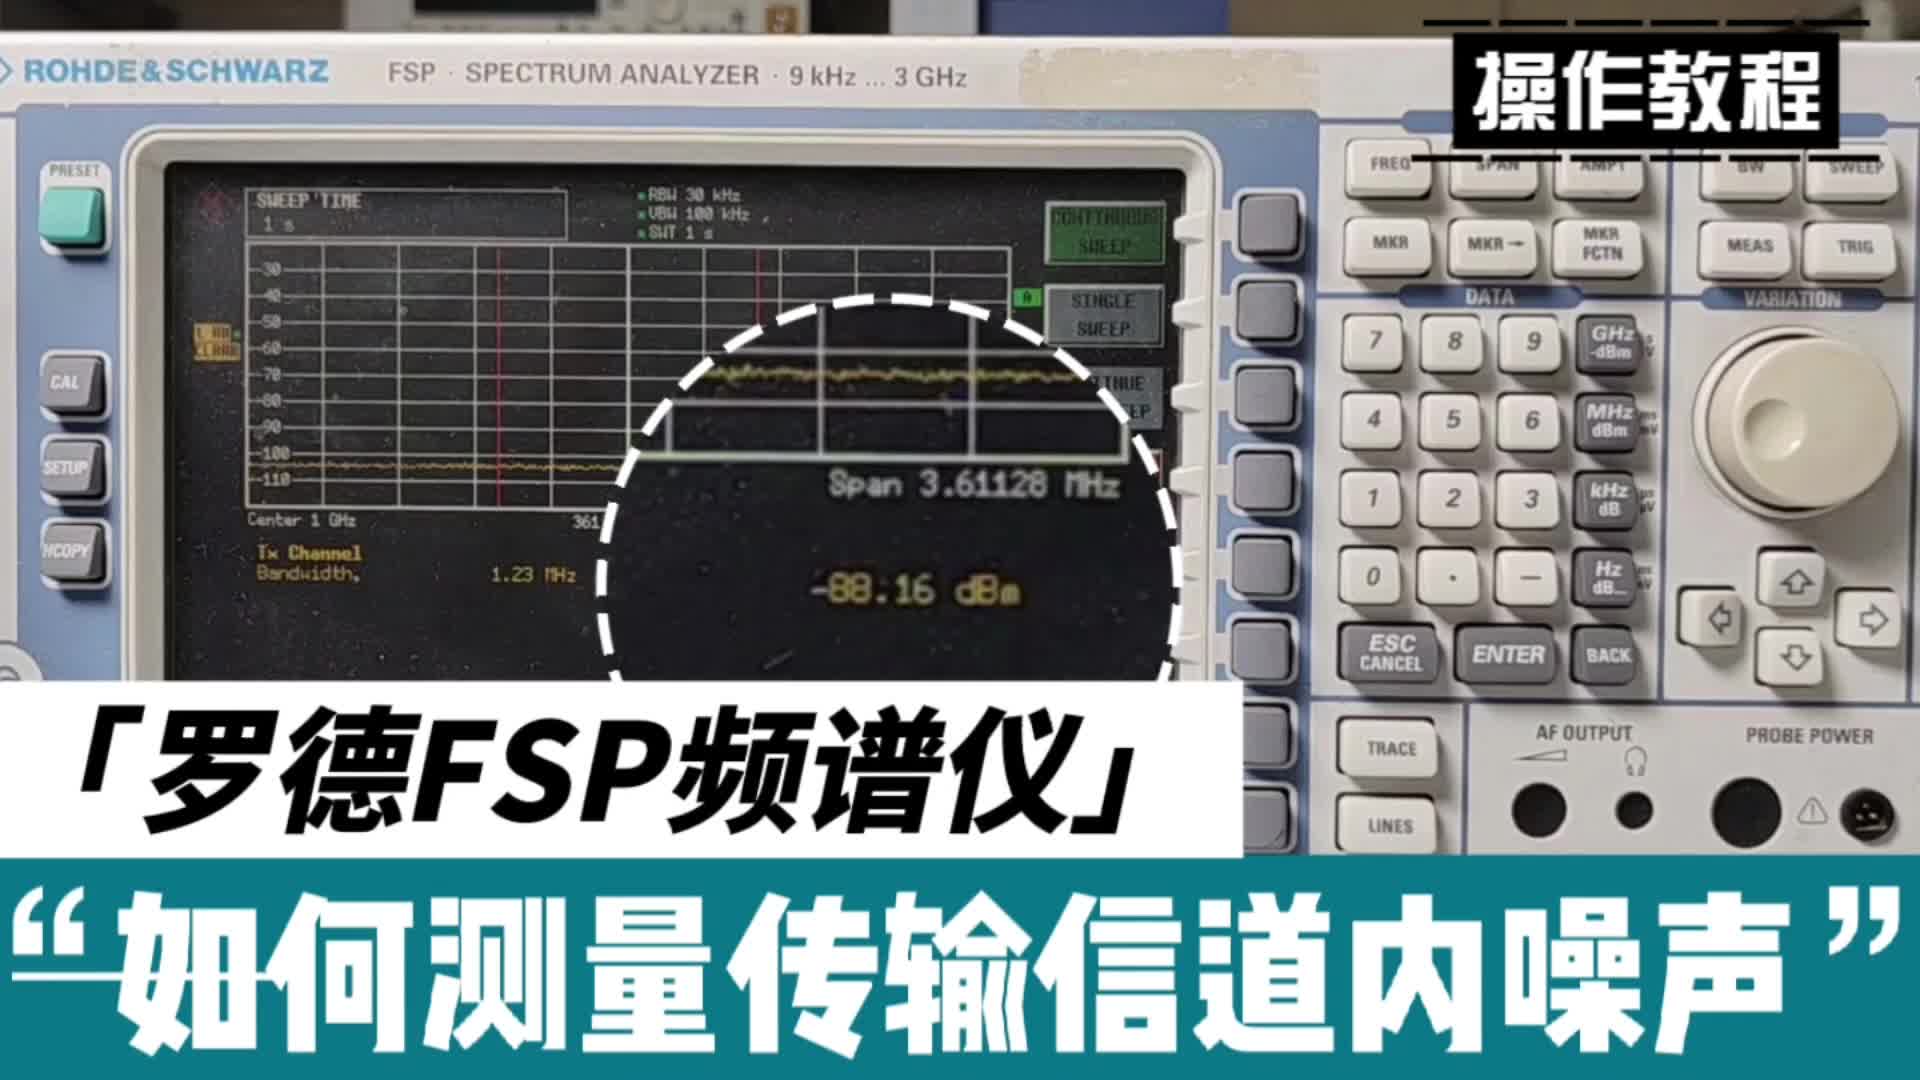 操作指南 | 罗德FSP频谱仪如何测量传输信道内噪声#频谱分析仪 